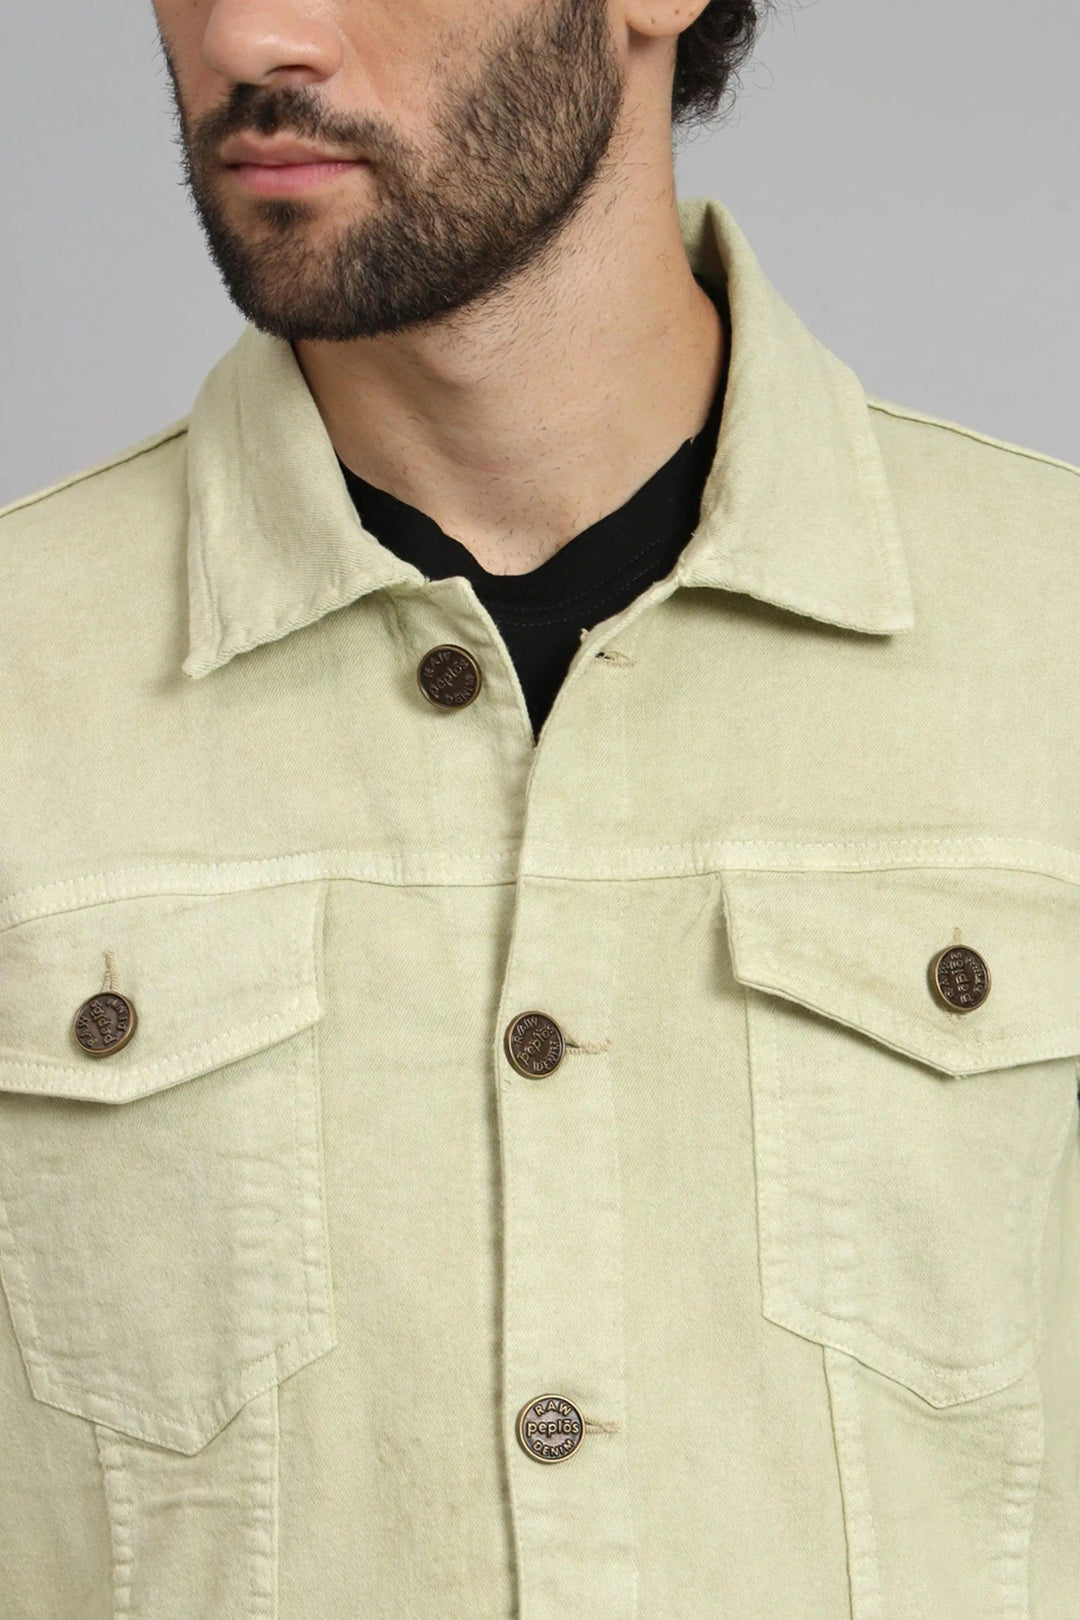 Regular Fit Pista Lime Color Denim Jacket for Men